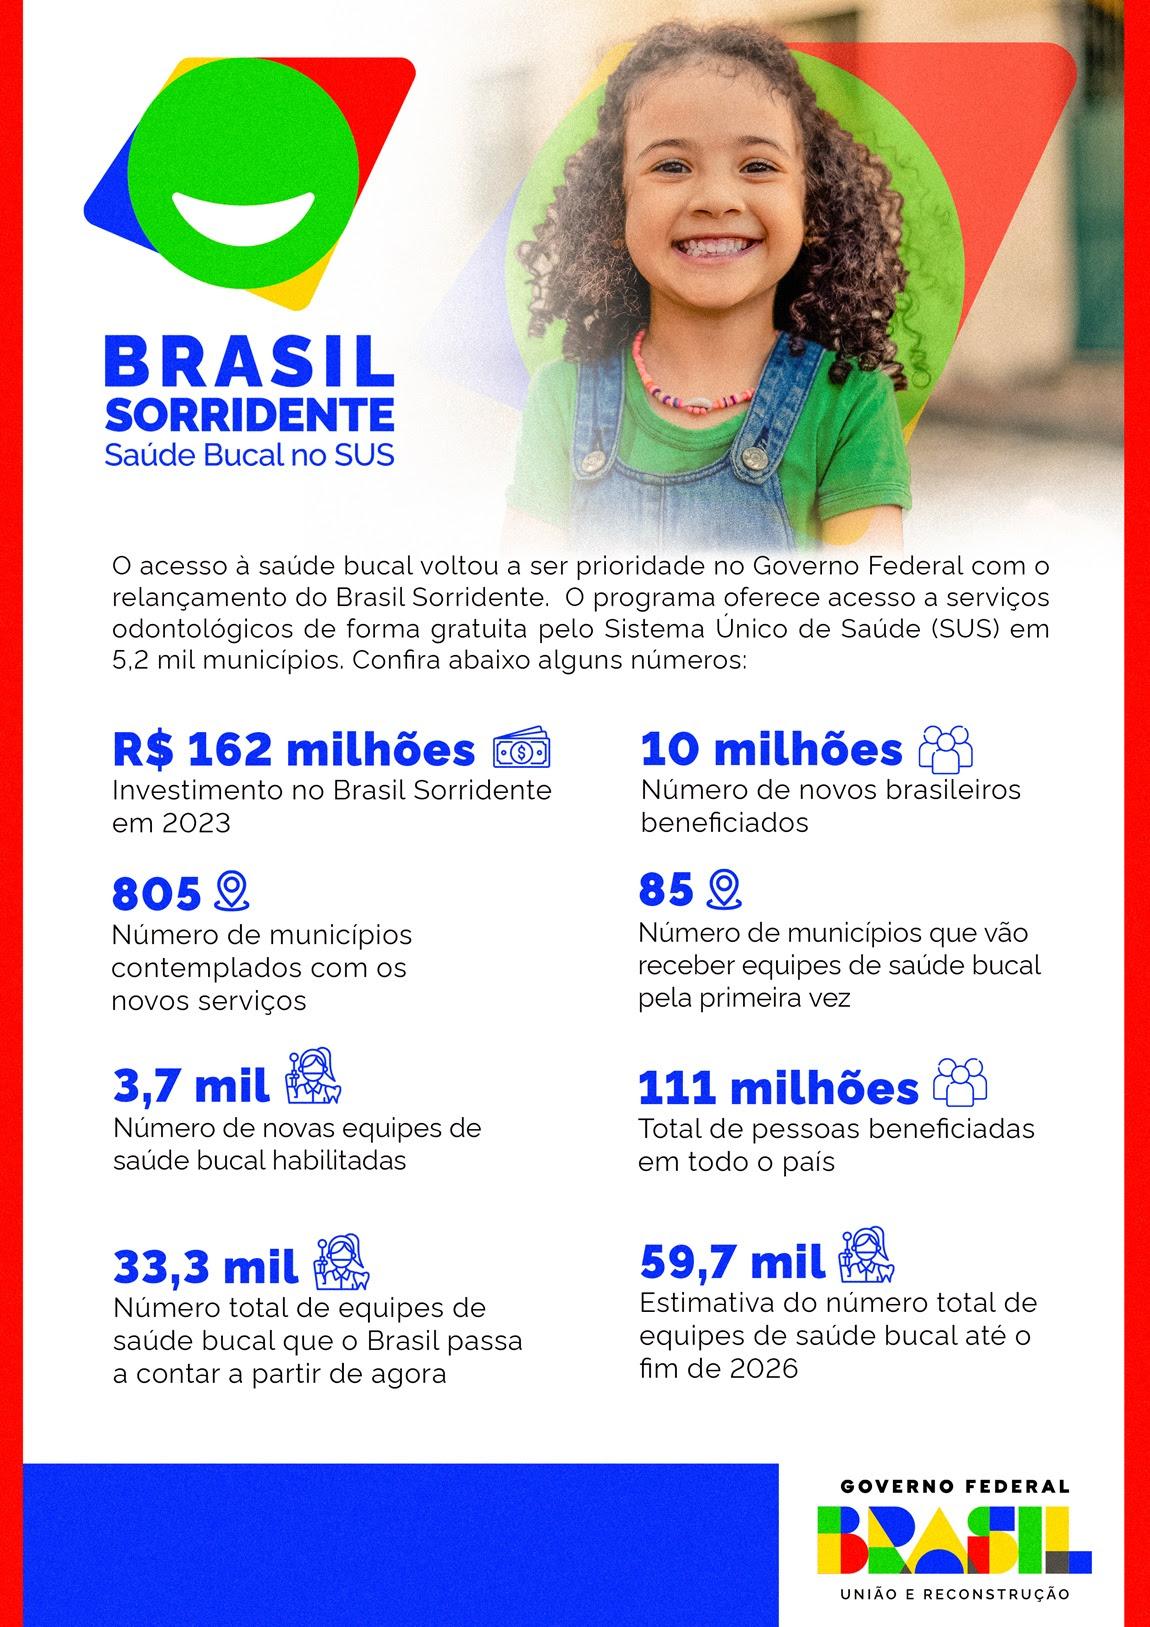 Lula: “O Brasil Sorridente recupera a dignidade do ser humano”